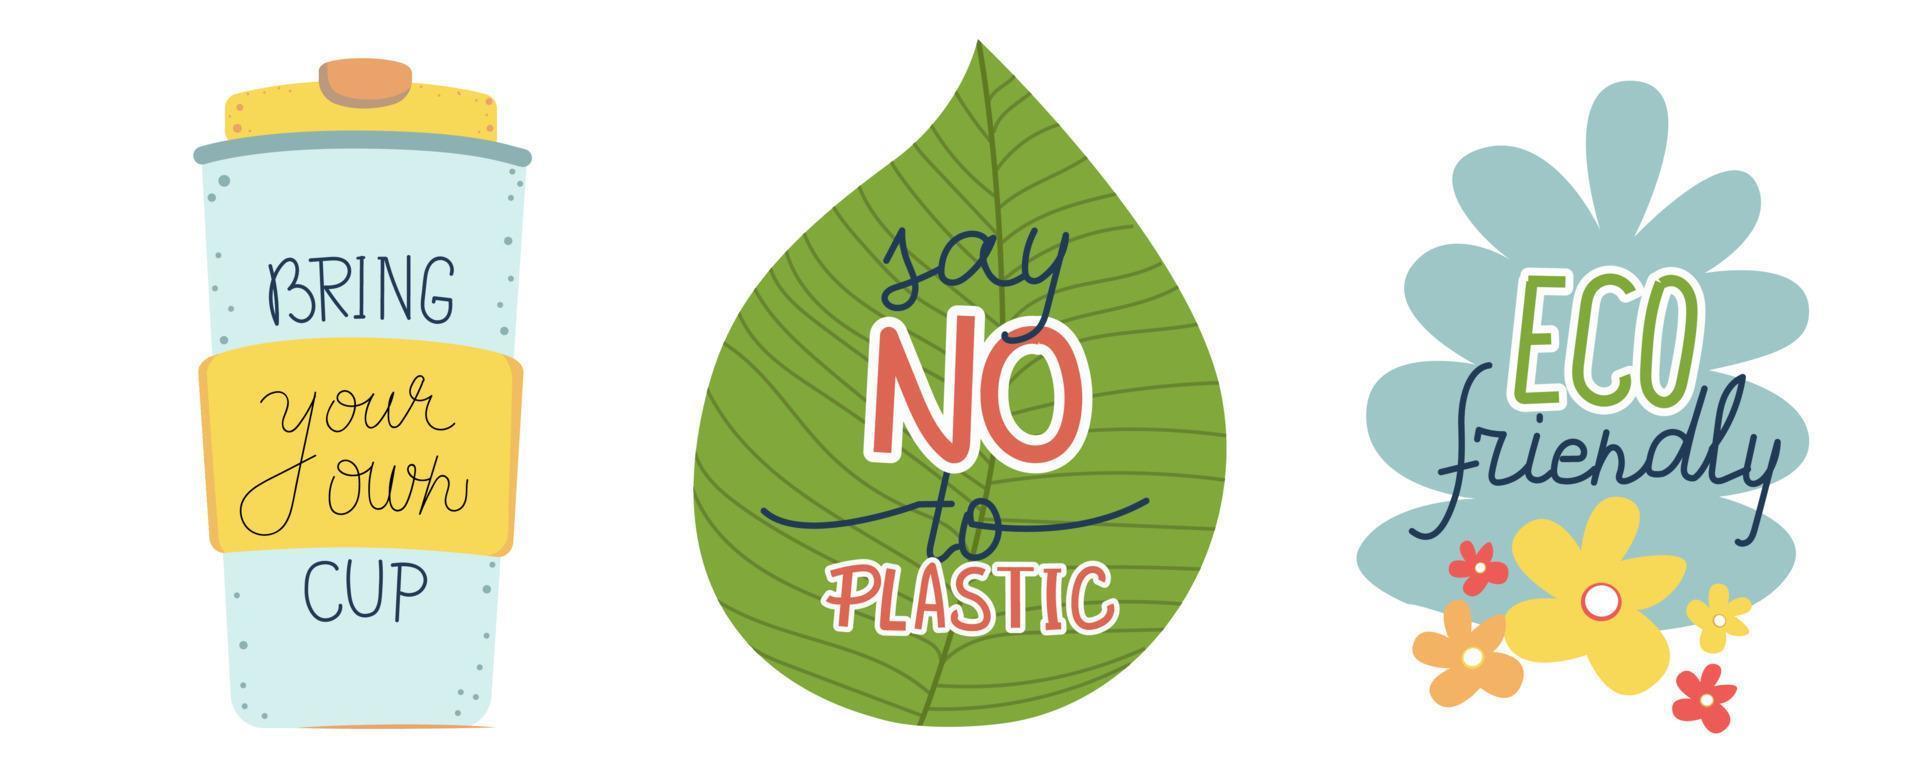 brengen uw eigen beker. zeggen Nee naar plastic. ecologie vriendelijk winkelen. koffie afhalen, nul verspilling concept. stickers vector